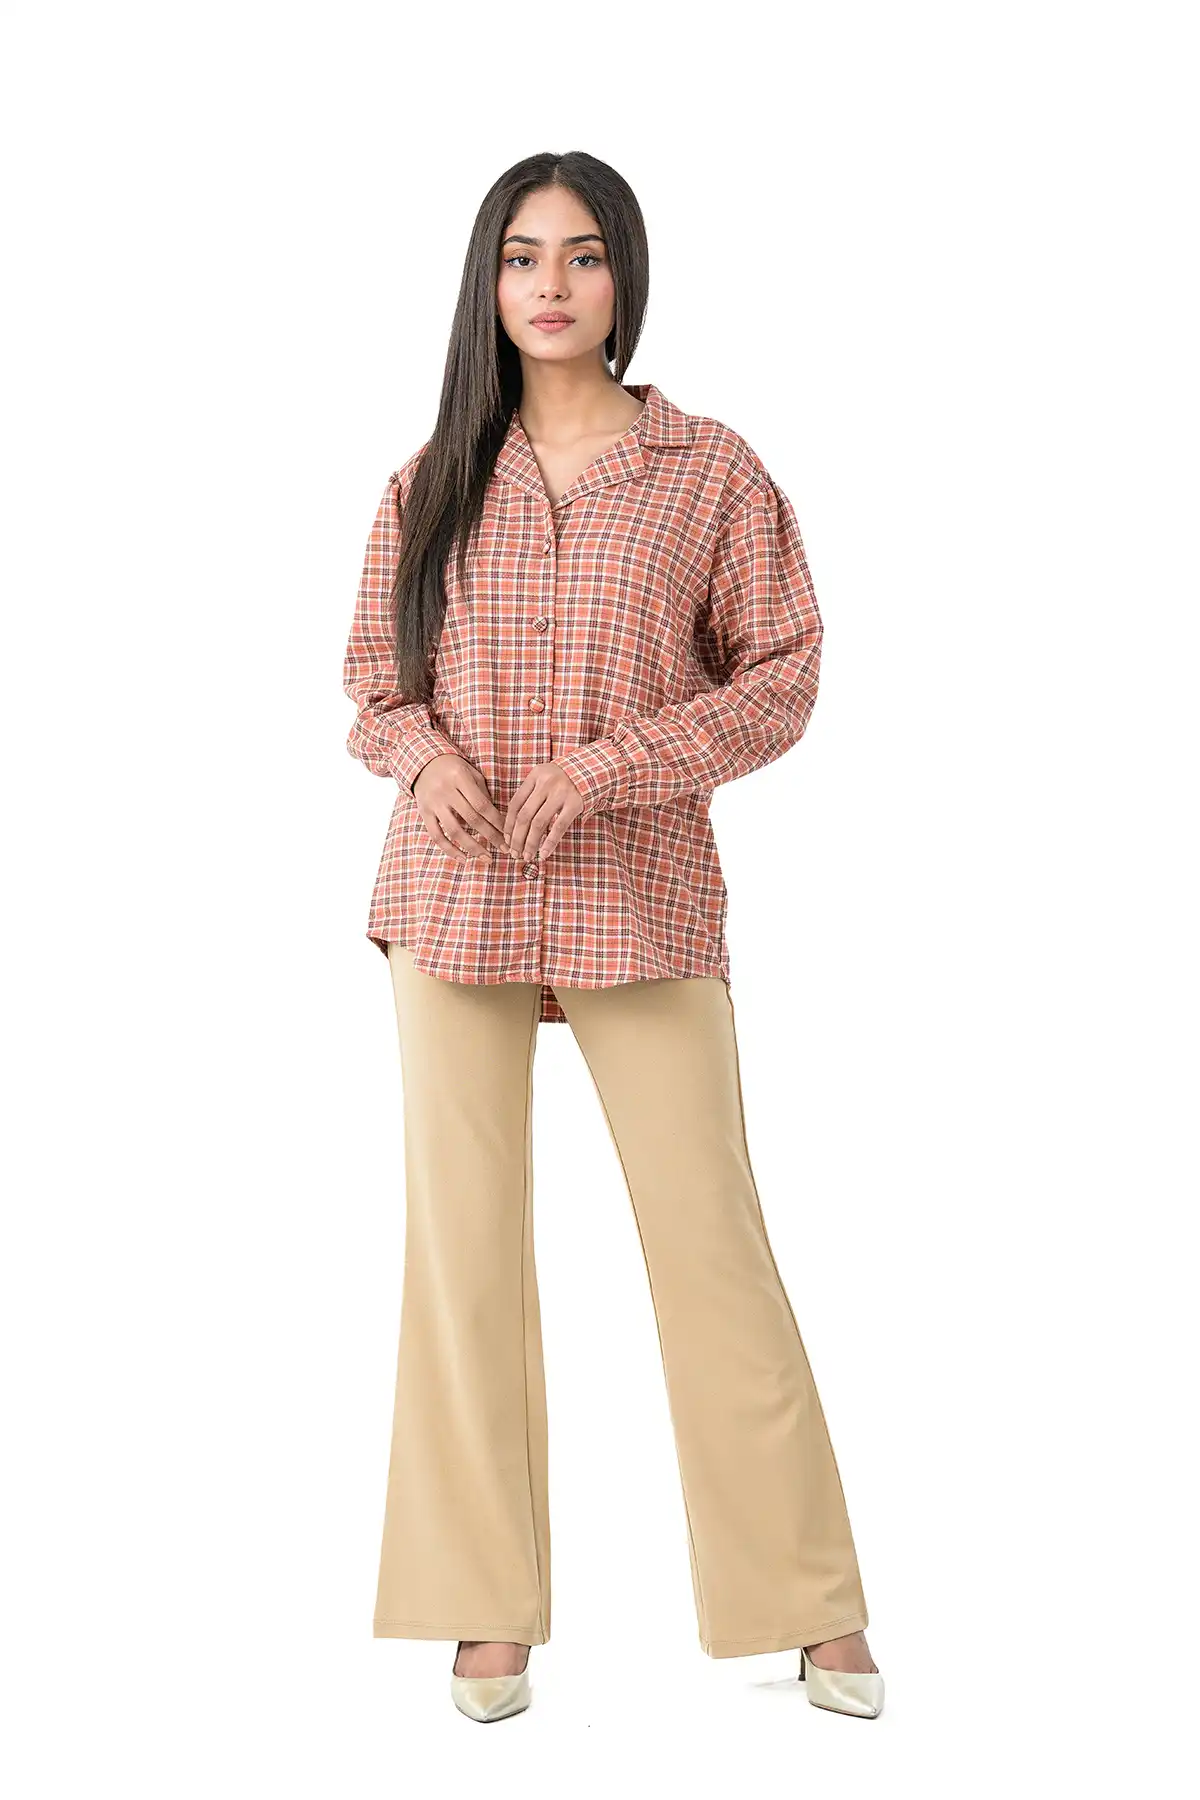 Flannel Check Shirt - Multi-Colored Check